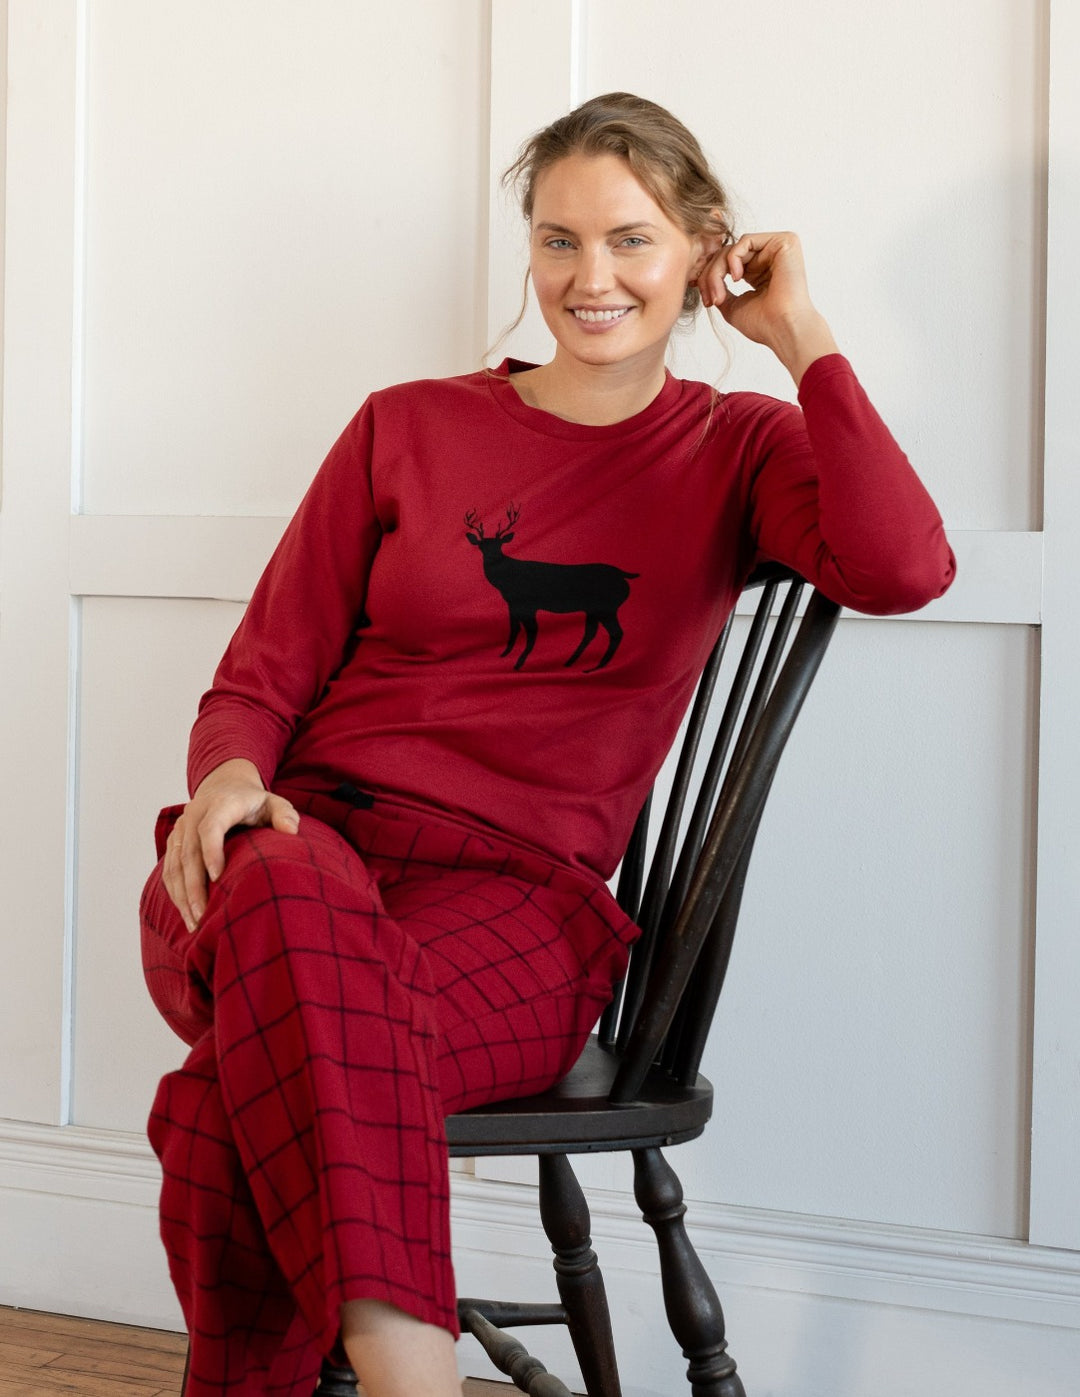 Leveret Women's Cotton Red & Black Plaid Pajama Set – Leveret Clothing